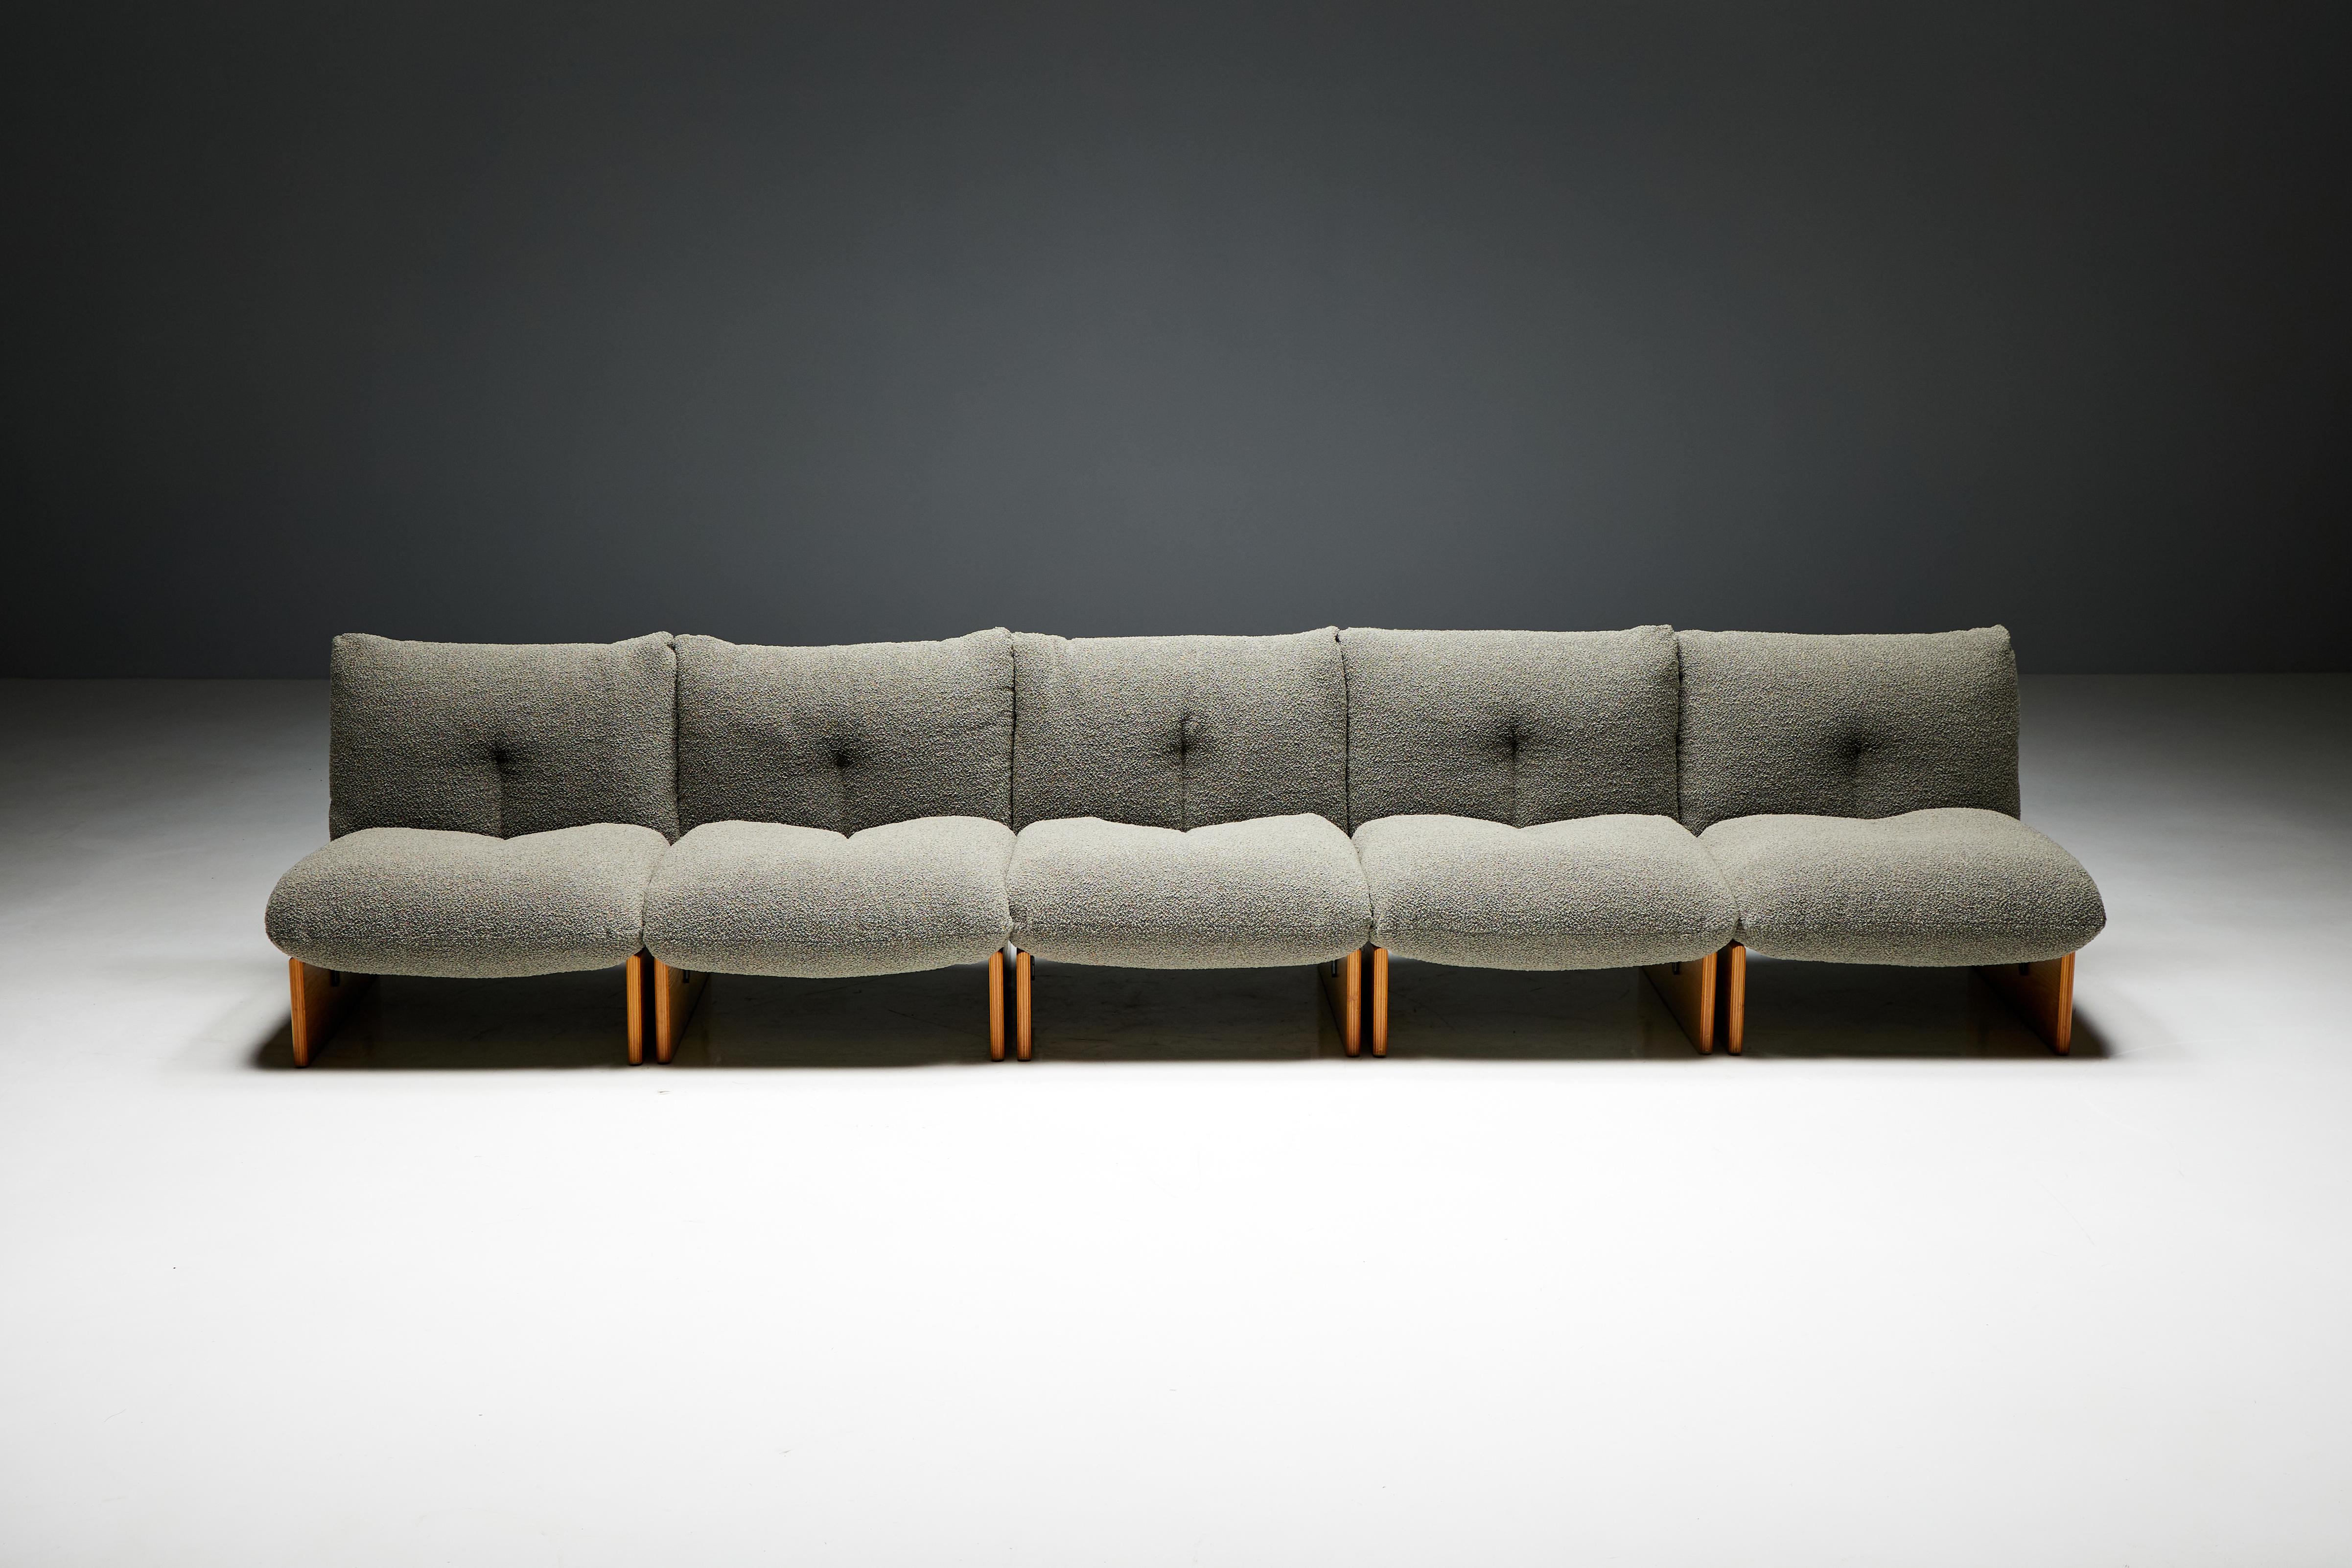 Arflex modulare Lounge-Stühle, die dem Visionär Tito Agnoli in der ikonischen Ära des Midcentury-Designs, ca. 1970er Jahre Italien, zugeschrieben werden. Dieses Lounge-Set besteht aus fünf einzelnen Modulen, deren Sitzfläche und Rückenlehne aus